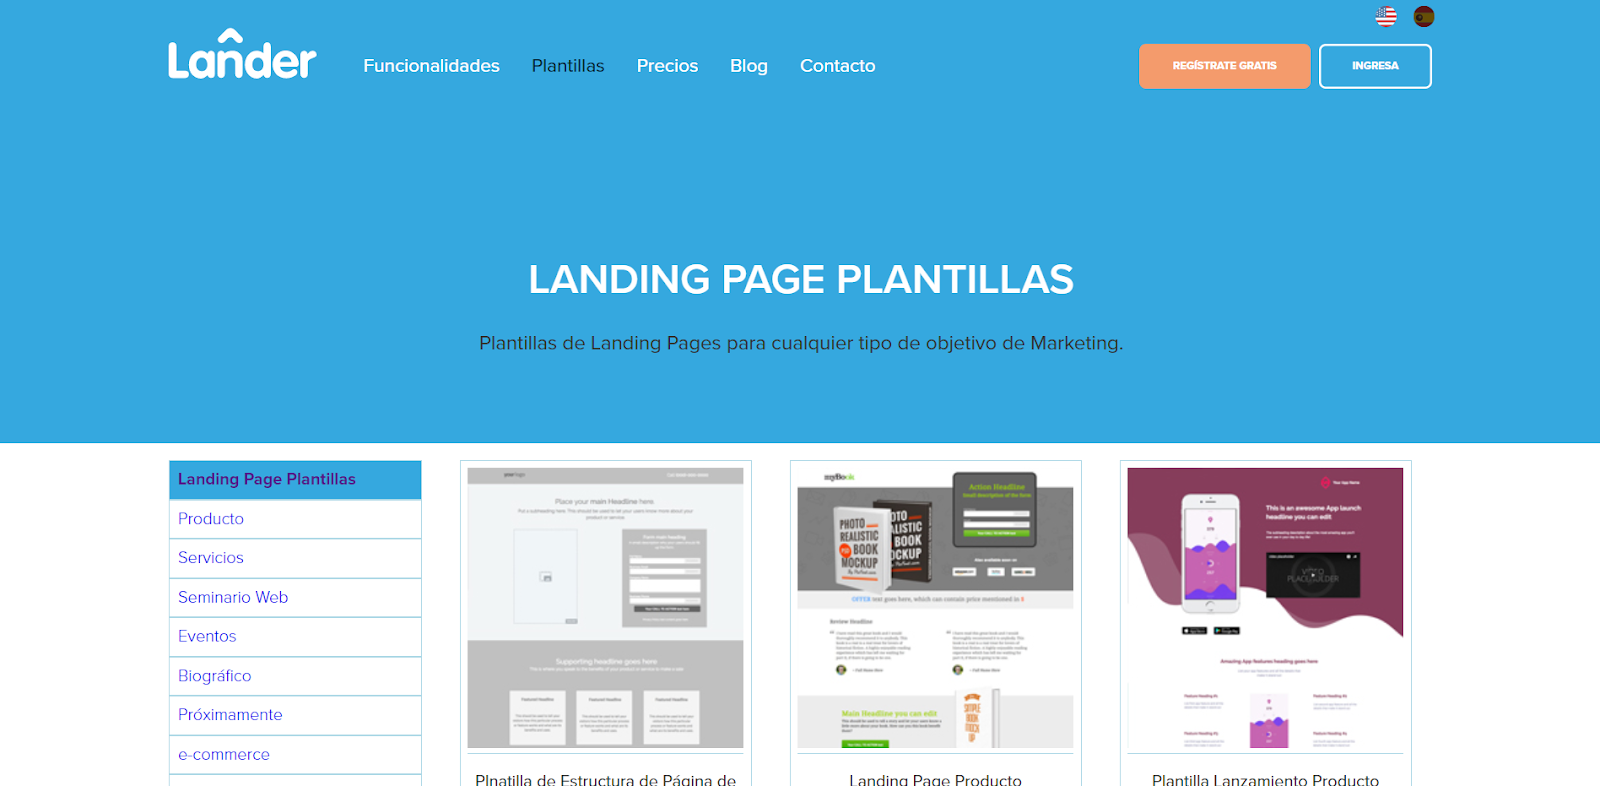 Plantillas de Lander, herramienta para crear landing pages. 